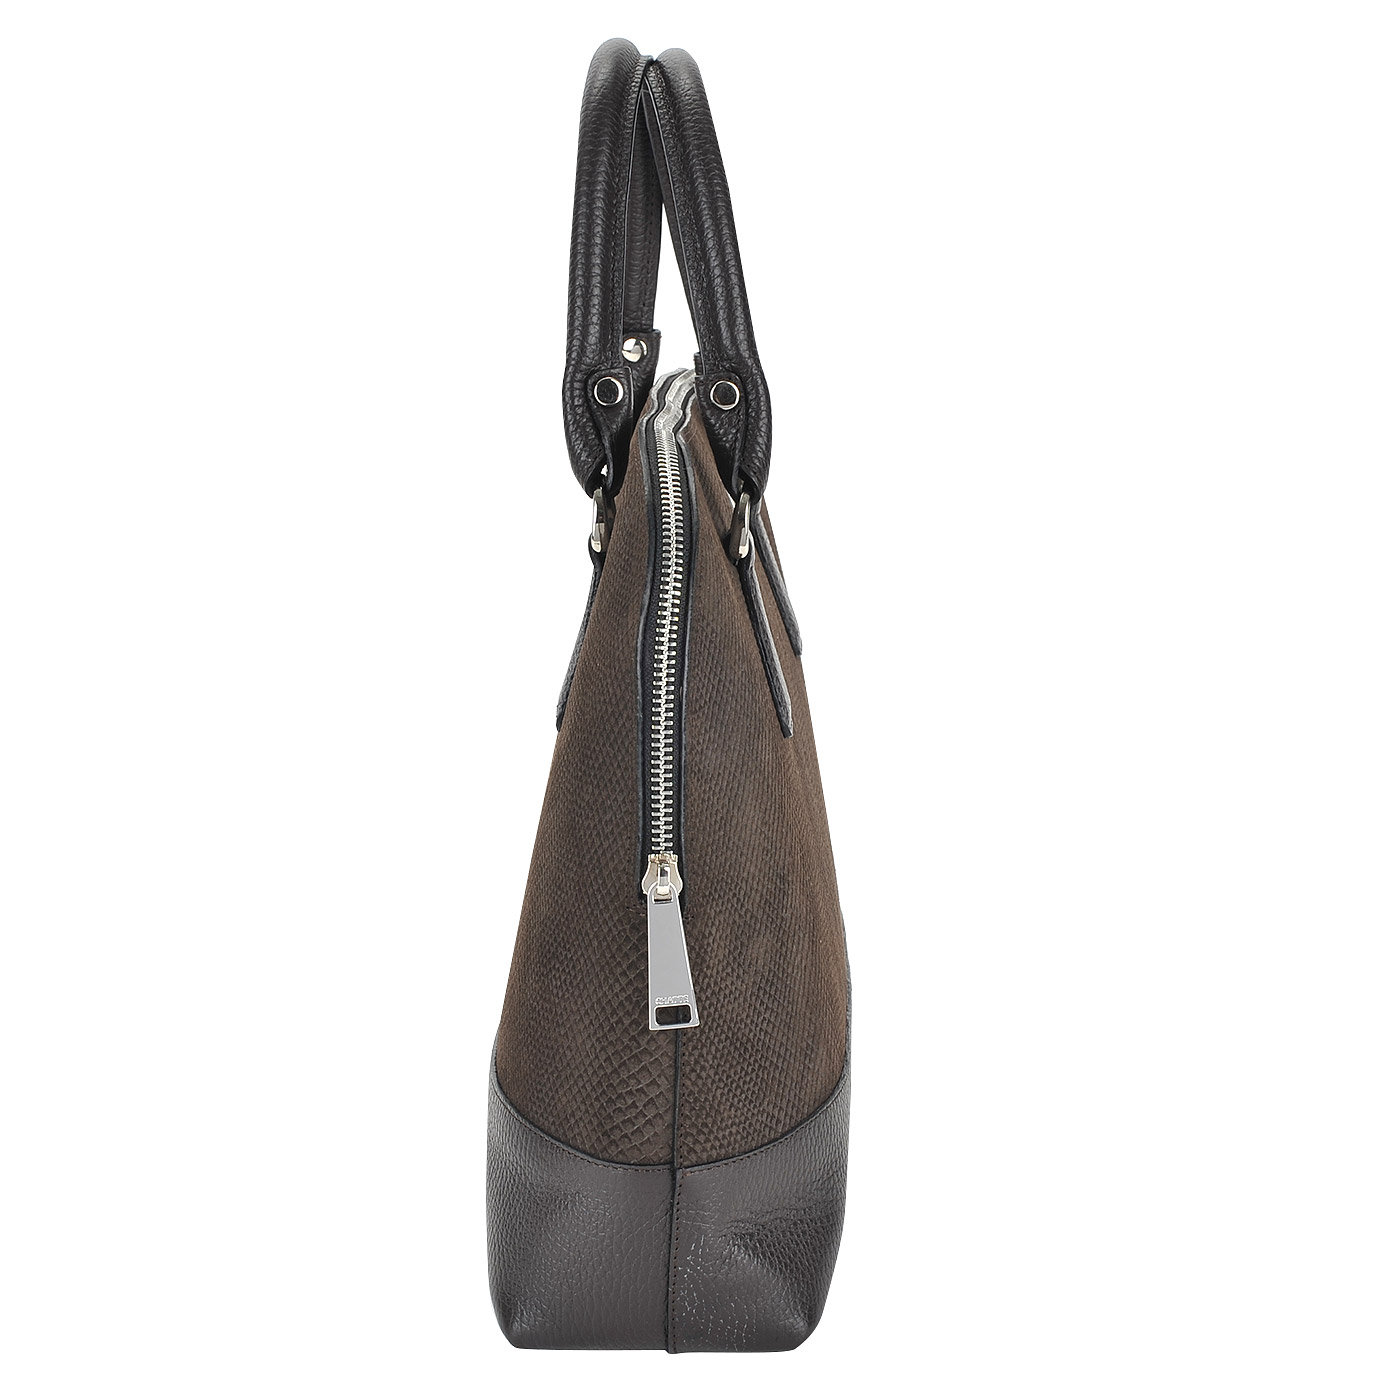 Женская сумка из комбинированной коричневой кожи Chatte 